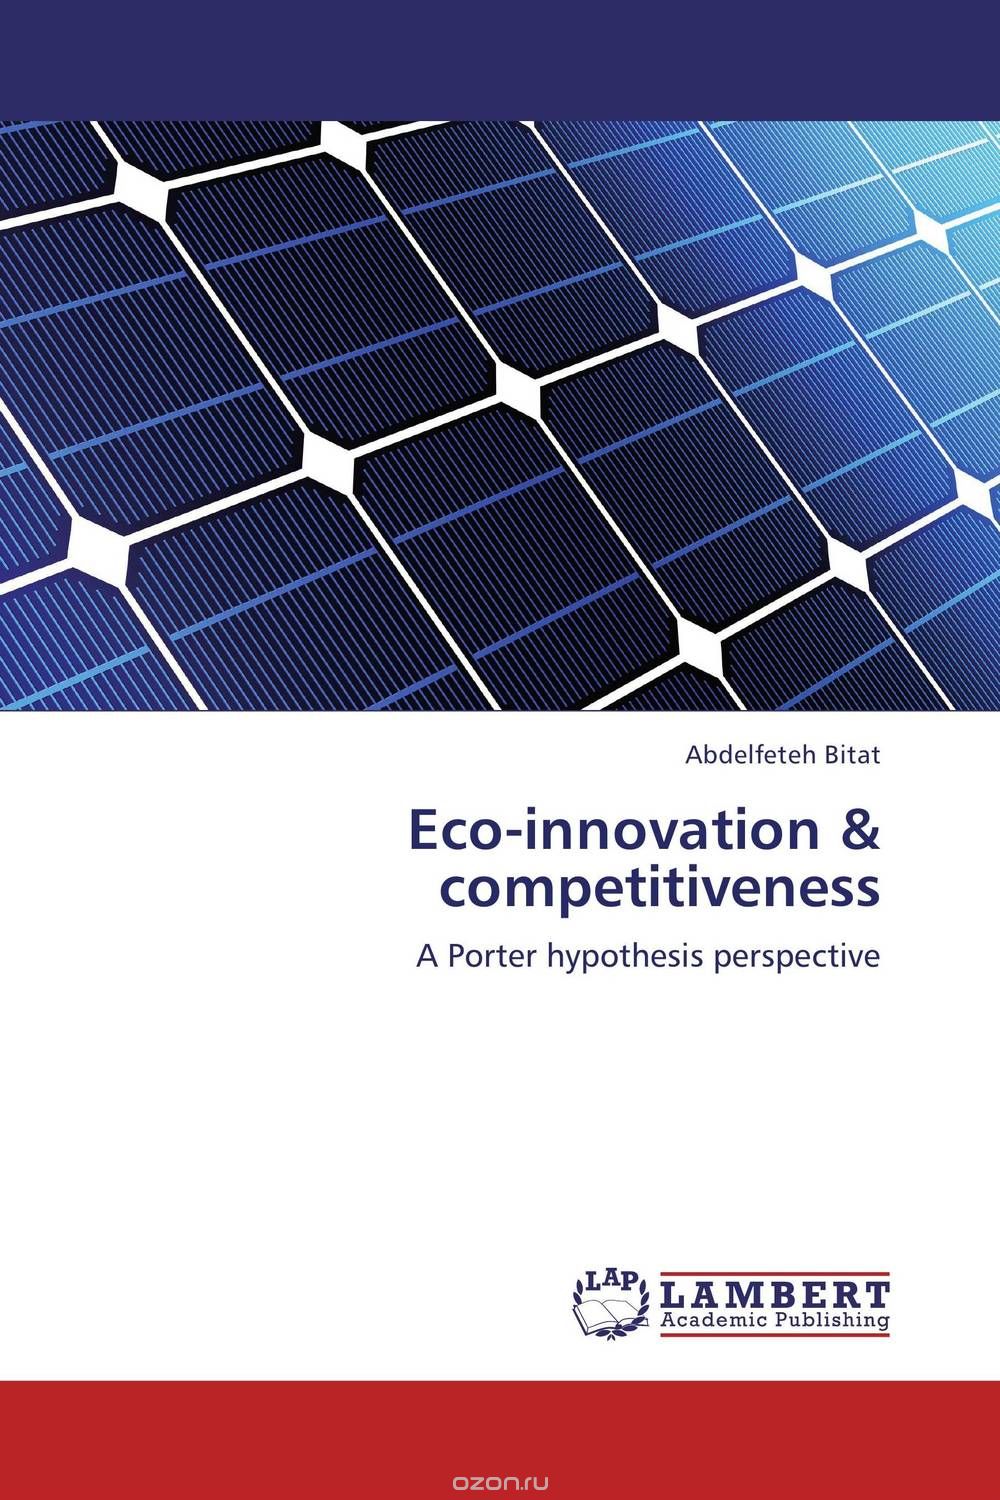 Скачать книгу "Eco-innovation & competitiveness"